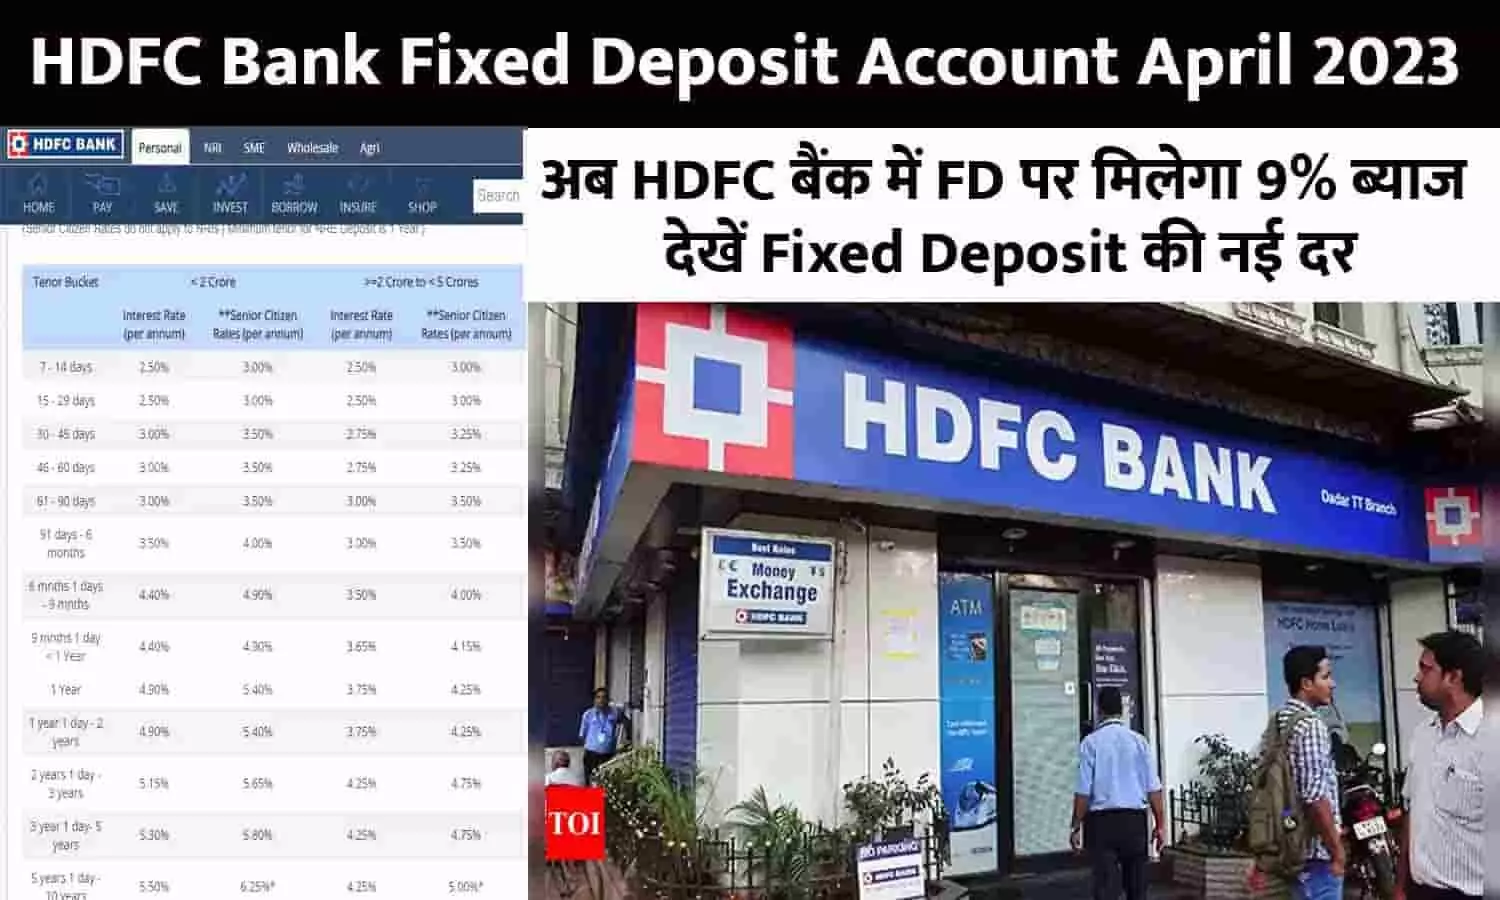 HDFC Bank Fixed Deposit Account Big Alert April 2023: अब HDFC बैंक में FD पर मिलेगा 9% ब्याज, देखें Fixed Deposit की नई दर